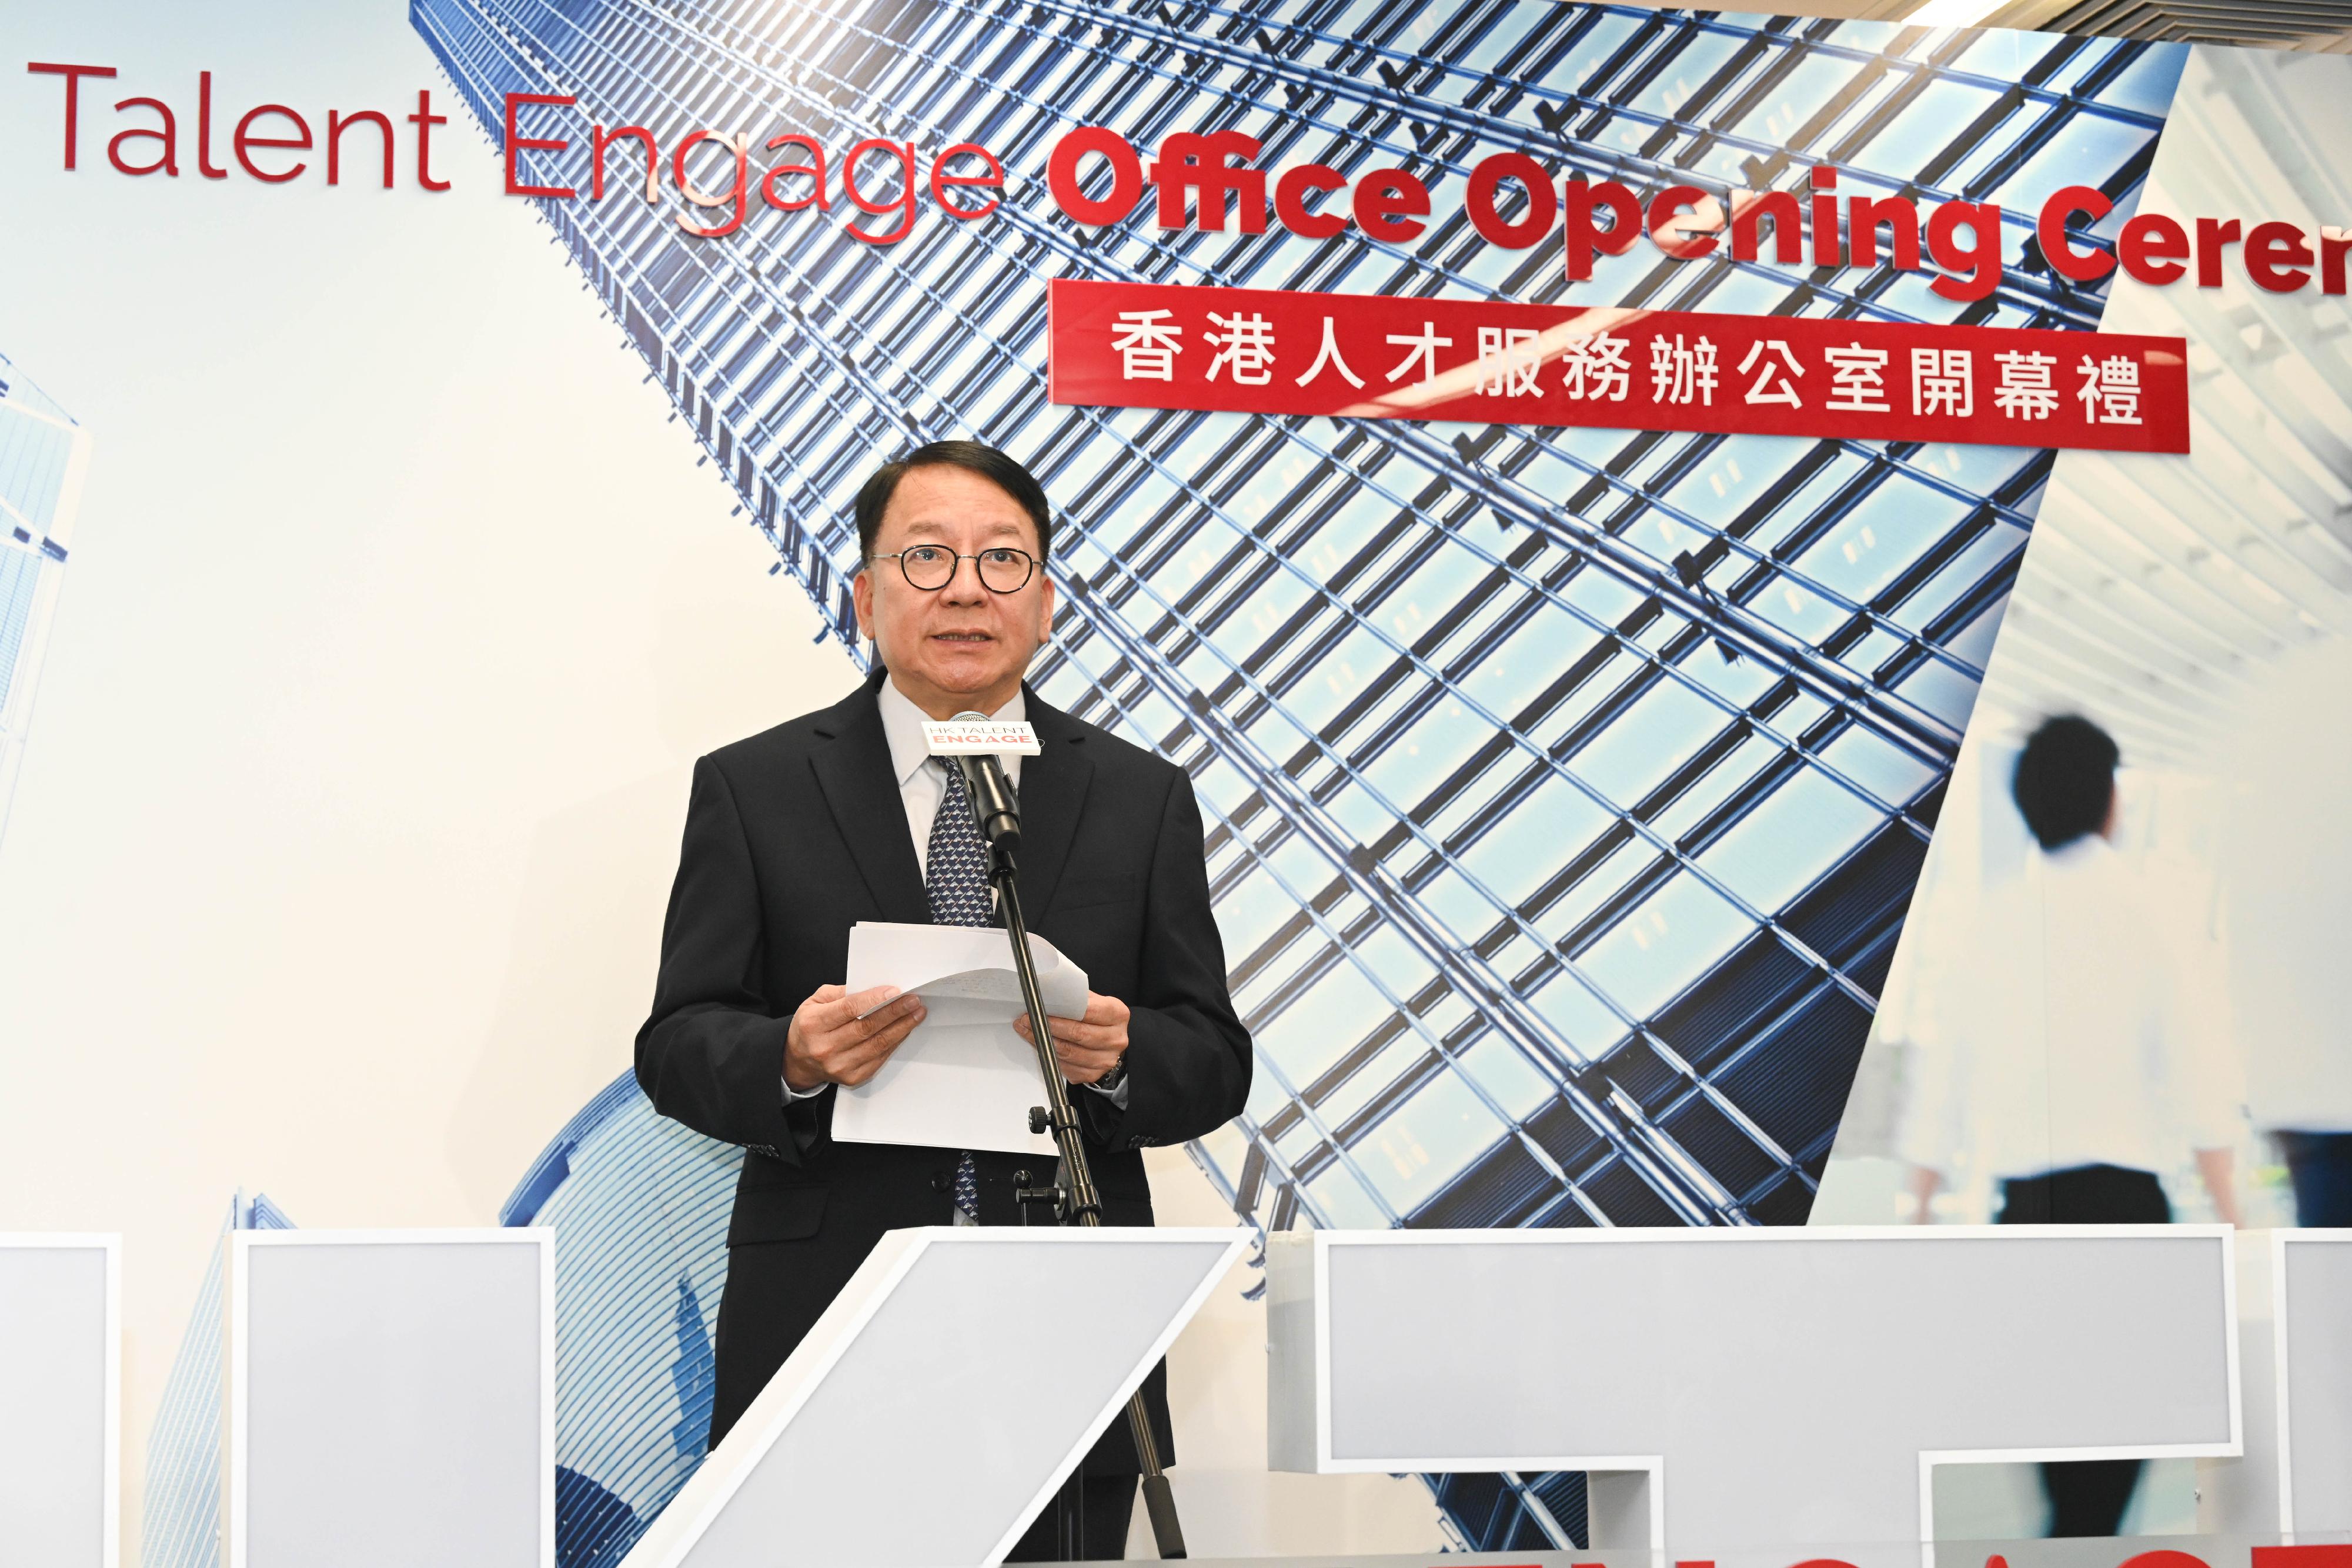 政務司司長陳國基今日（十月三十日）主持「香港人才服務辦公室」開幕禮。圖示陳國基在開幕禮上致辭。